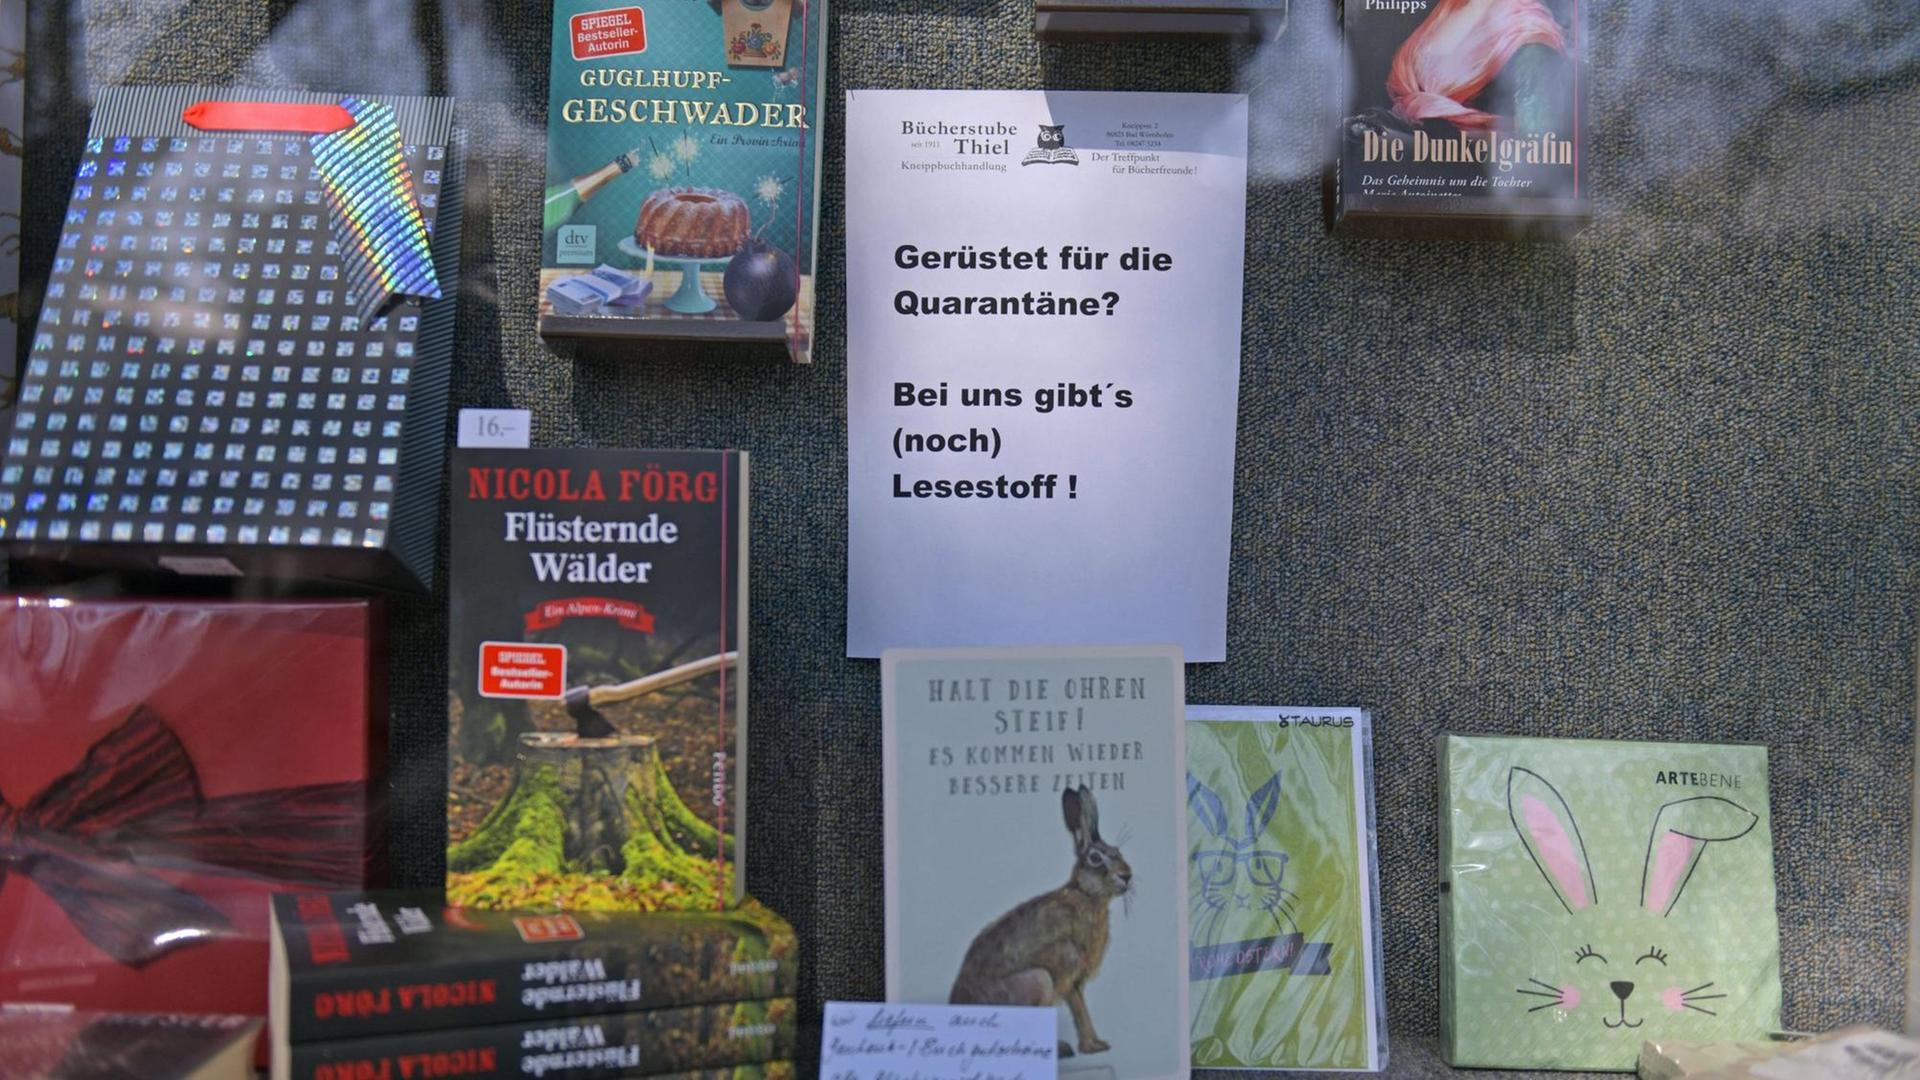 Ausschnitt eines Schaufensters einer Buchhandlung in Bayern: Zu sehen sind verschiedene Bücher, dazwischen ein Schild mit der Aufschrift "Gerüstet für die Quarantäne? Bei uns gibt es (noch) Lesestoff!"